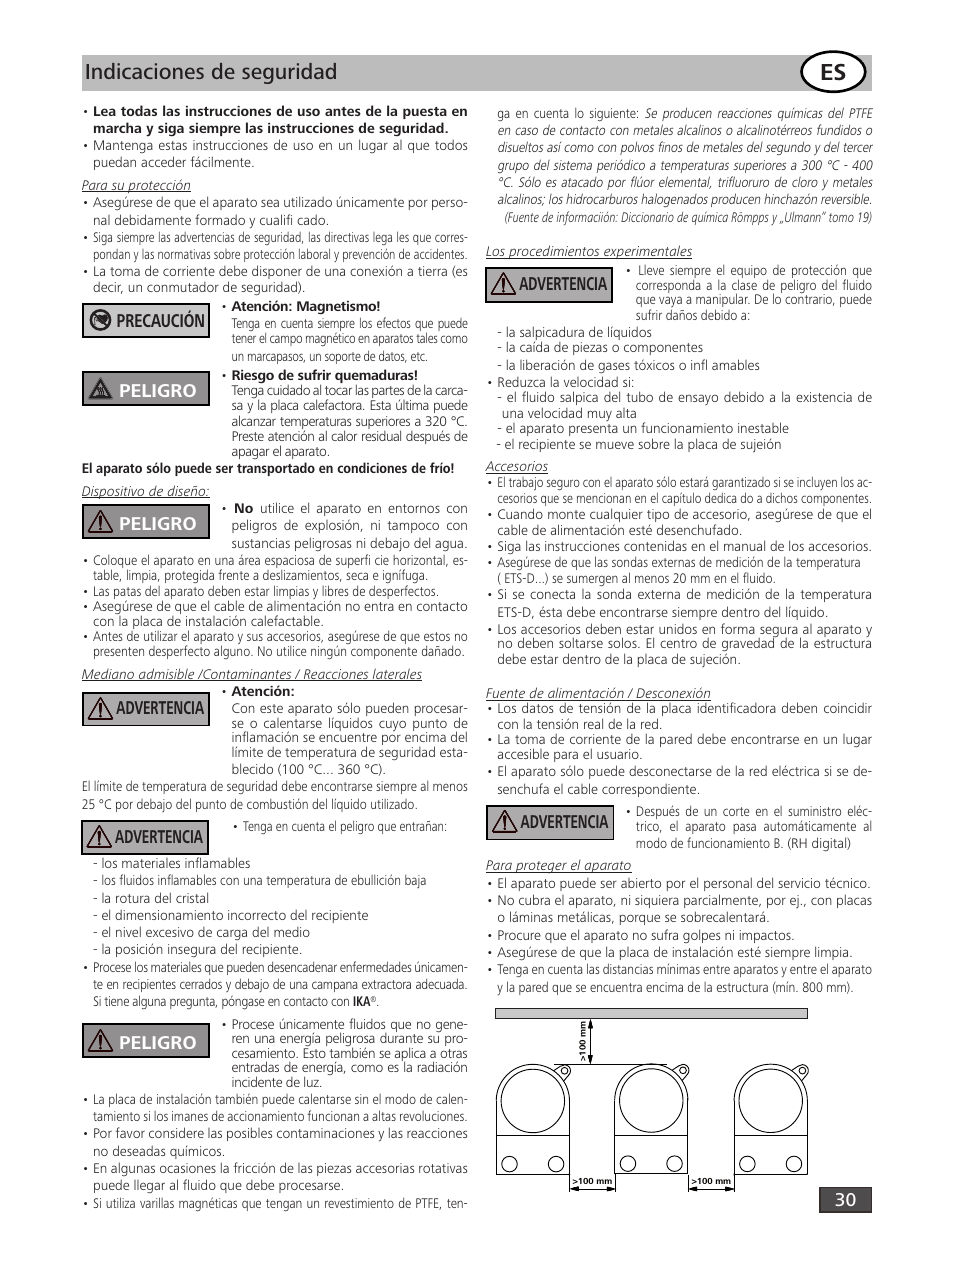 Indicaciones de seguridad, Advertencia, Precaución peligro | IKA RH digital User Manual | Page 30 / 52